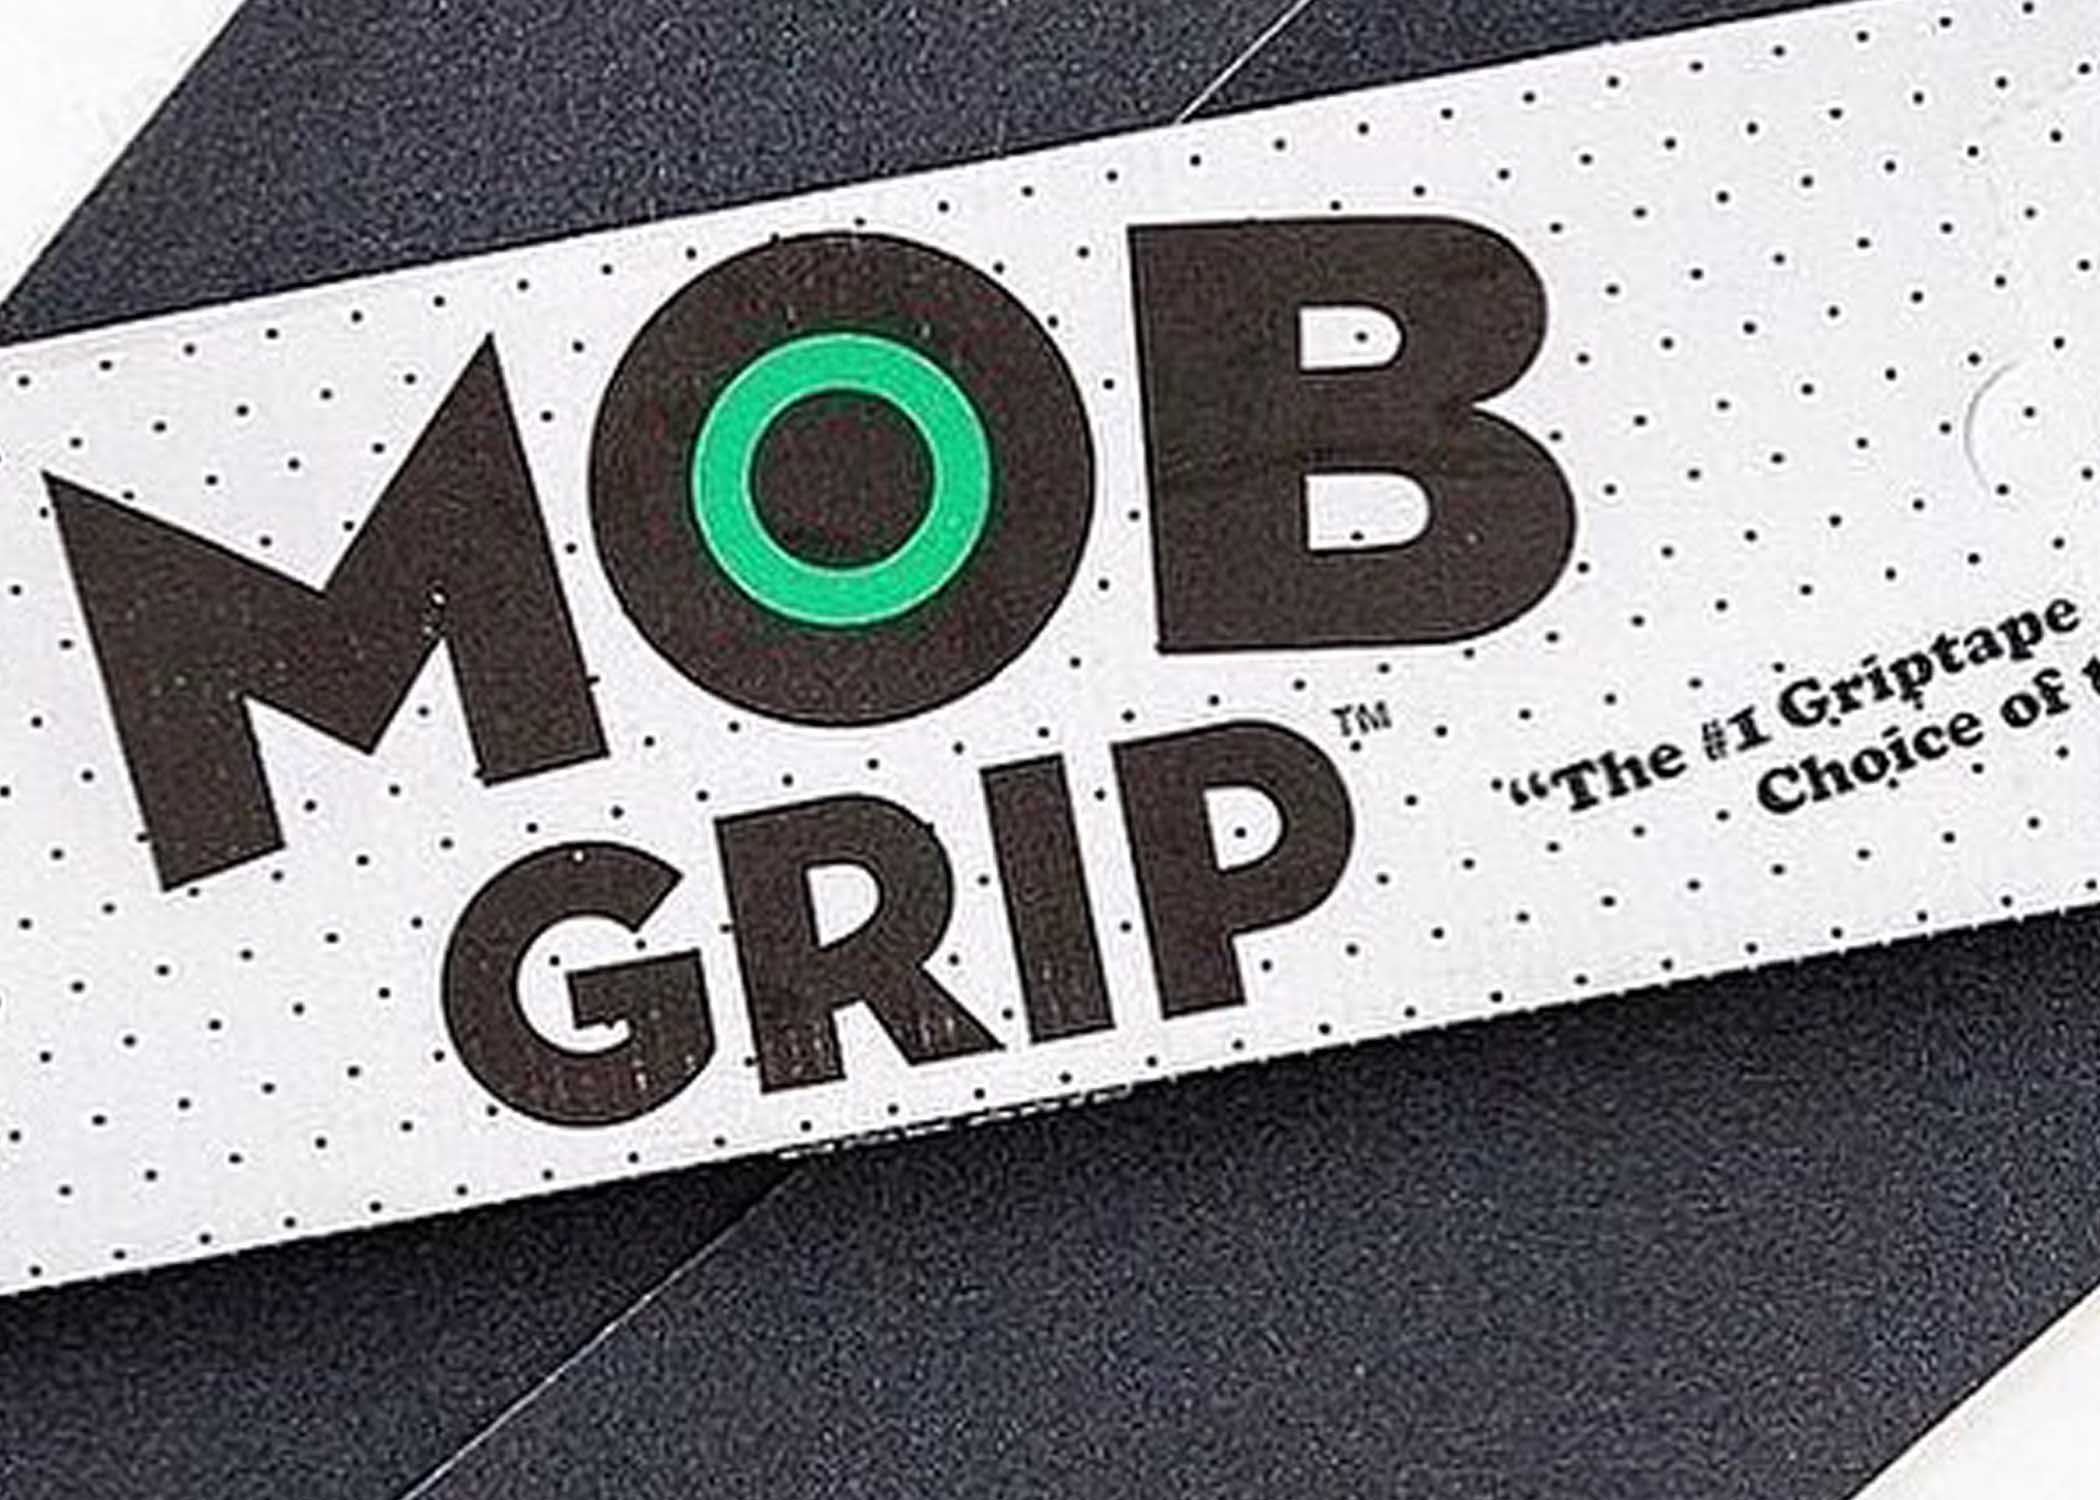 Carpet Company C-Star Mob Griptape in stock at SPoT Skate Shop